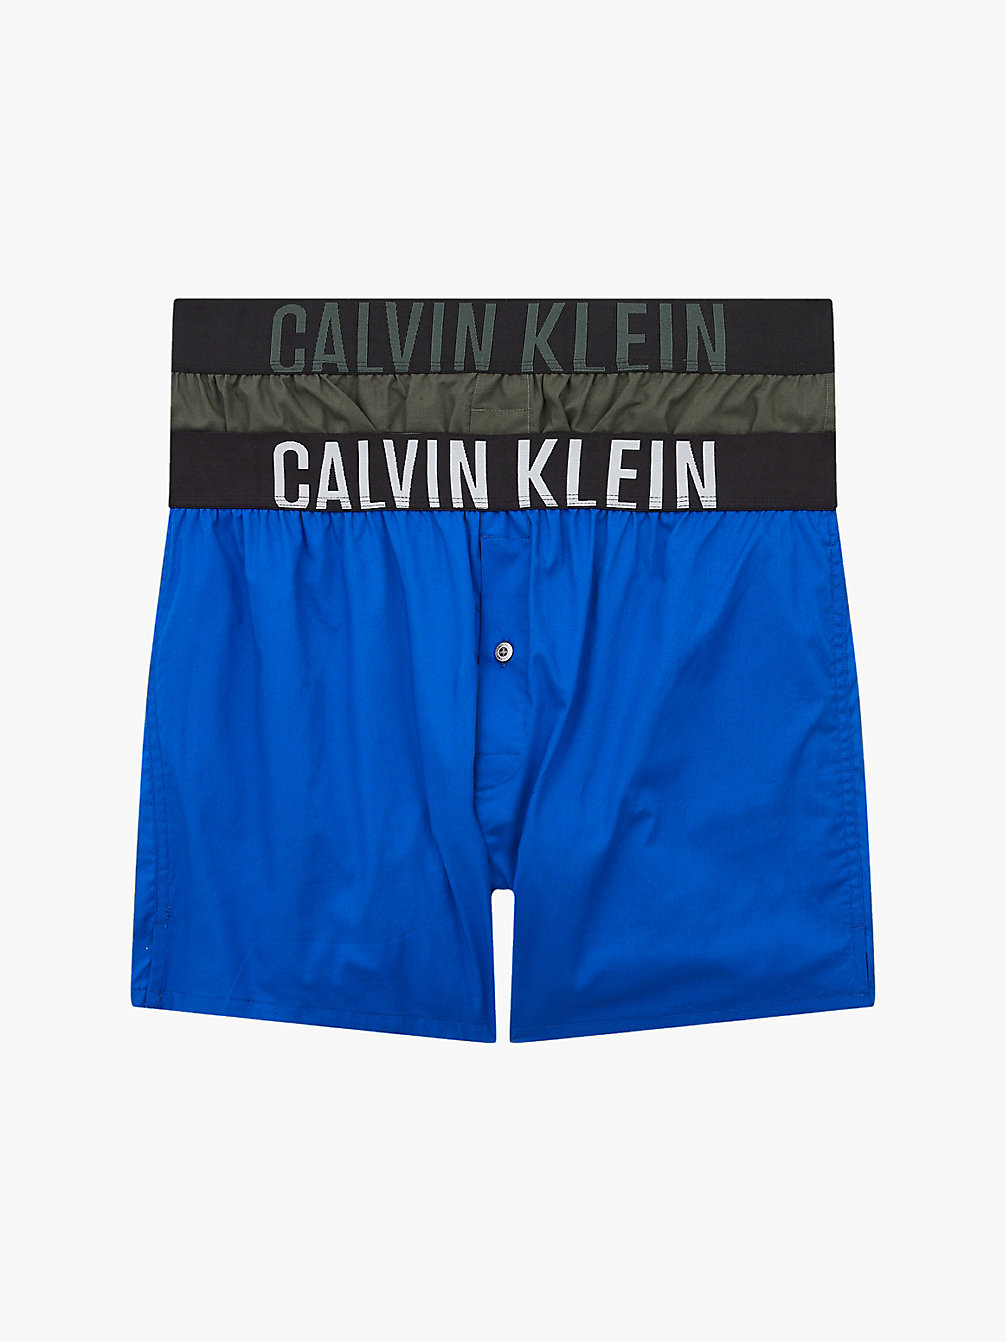 Boxer Slim In Confezione Da 2 - Intense Power > NEW SLATE/ PROVIDENCE BLUE > undefined uomo > Calvin Klein